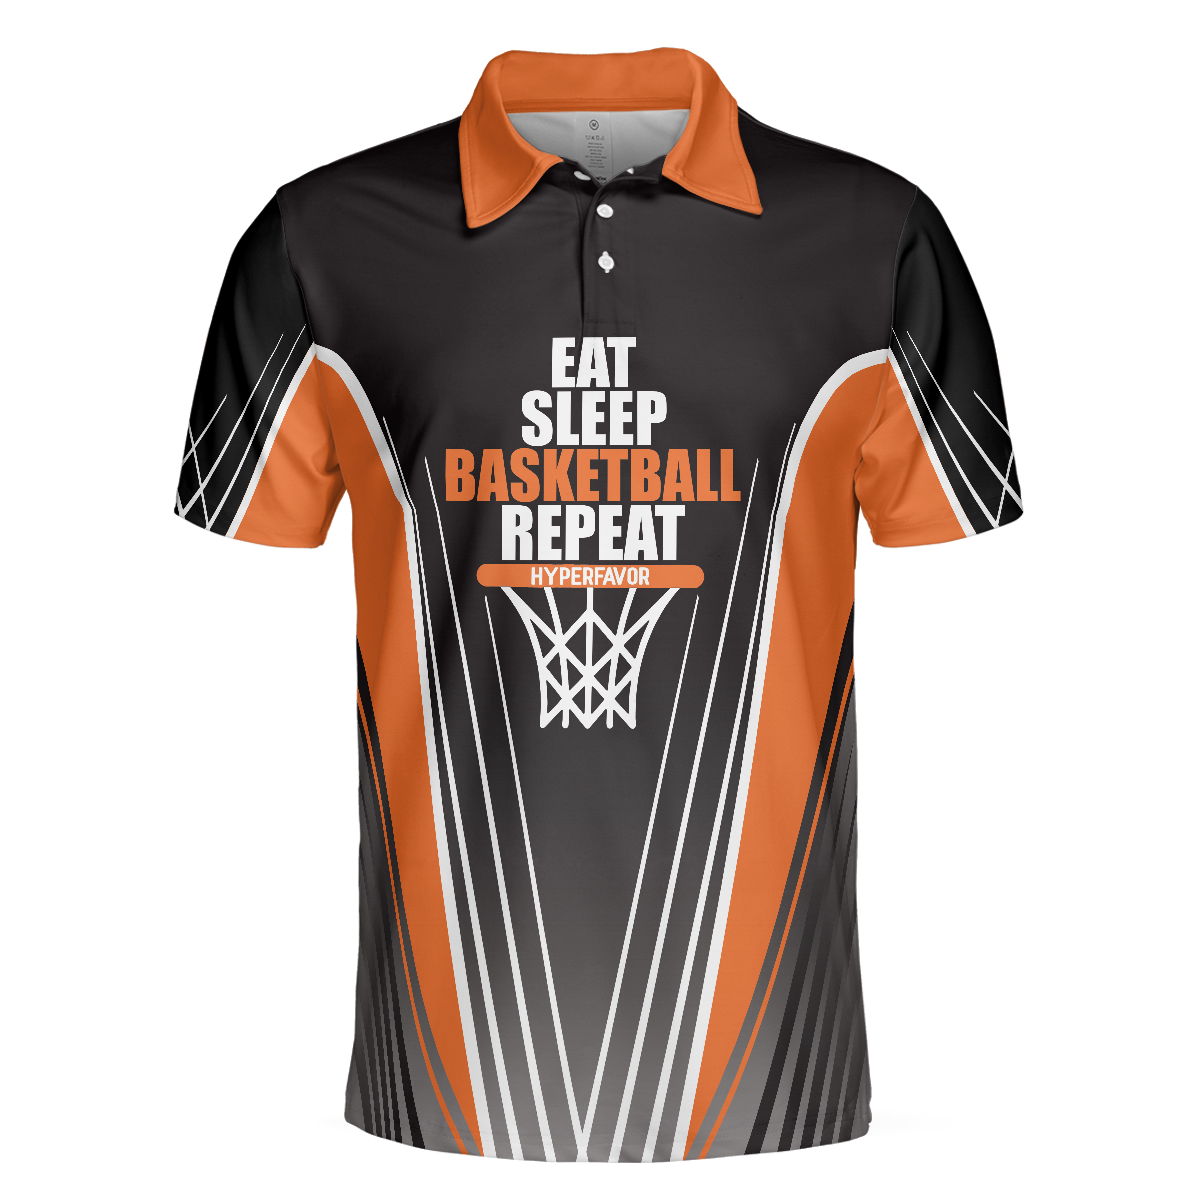 Basketball Players Eat Sleep Basketball Repeat Polo Shirt Black And Orange BasketBall Shirt For Basketball Fans - 3